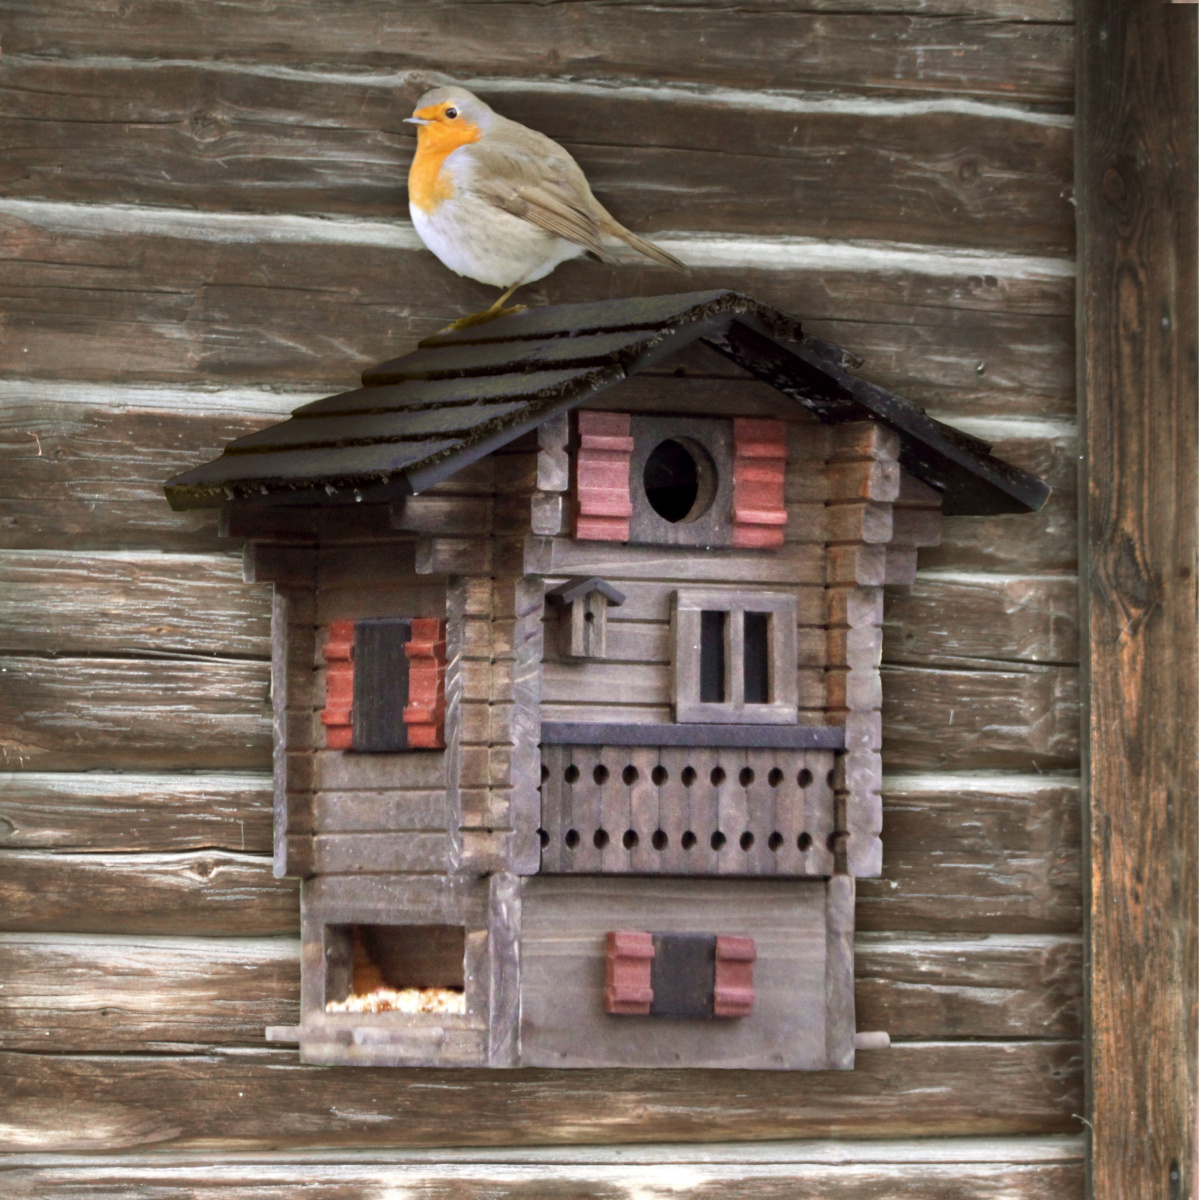 Wildlife Garden nest box / automatic feeder - hut